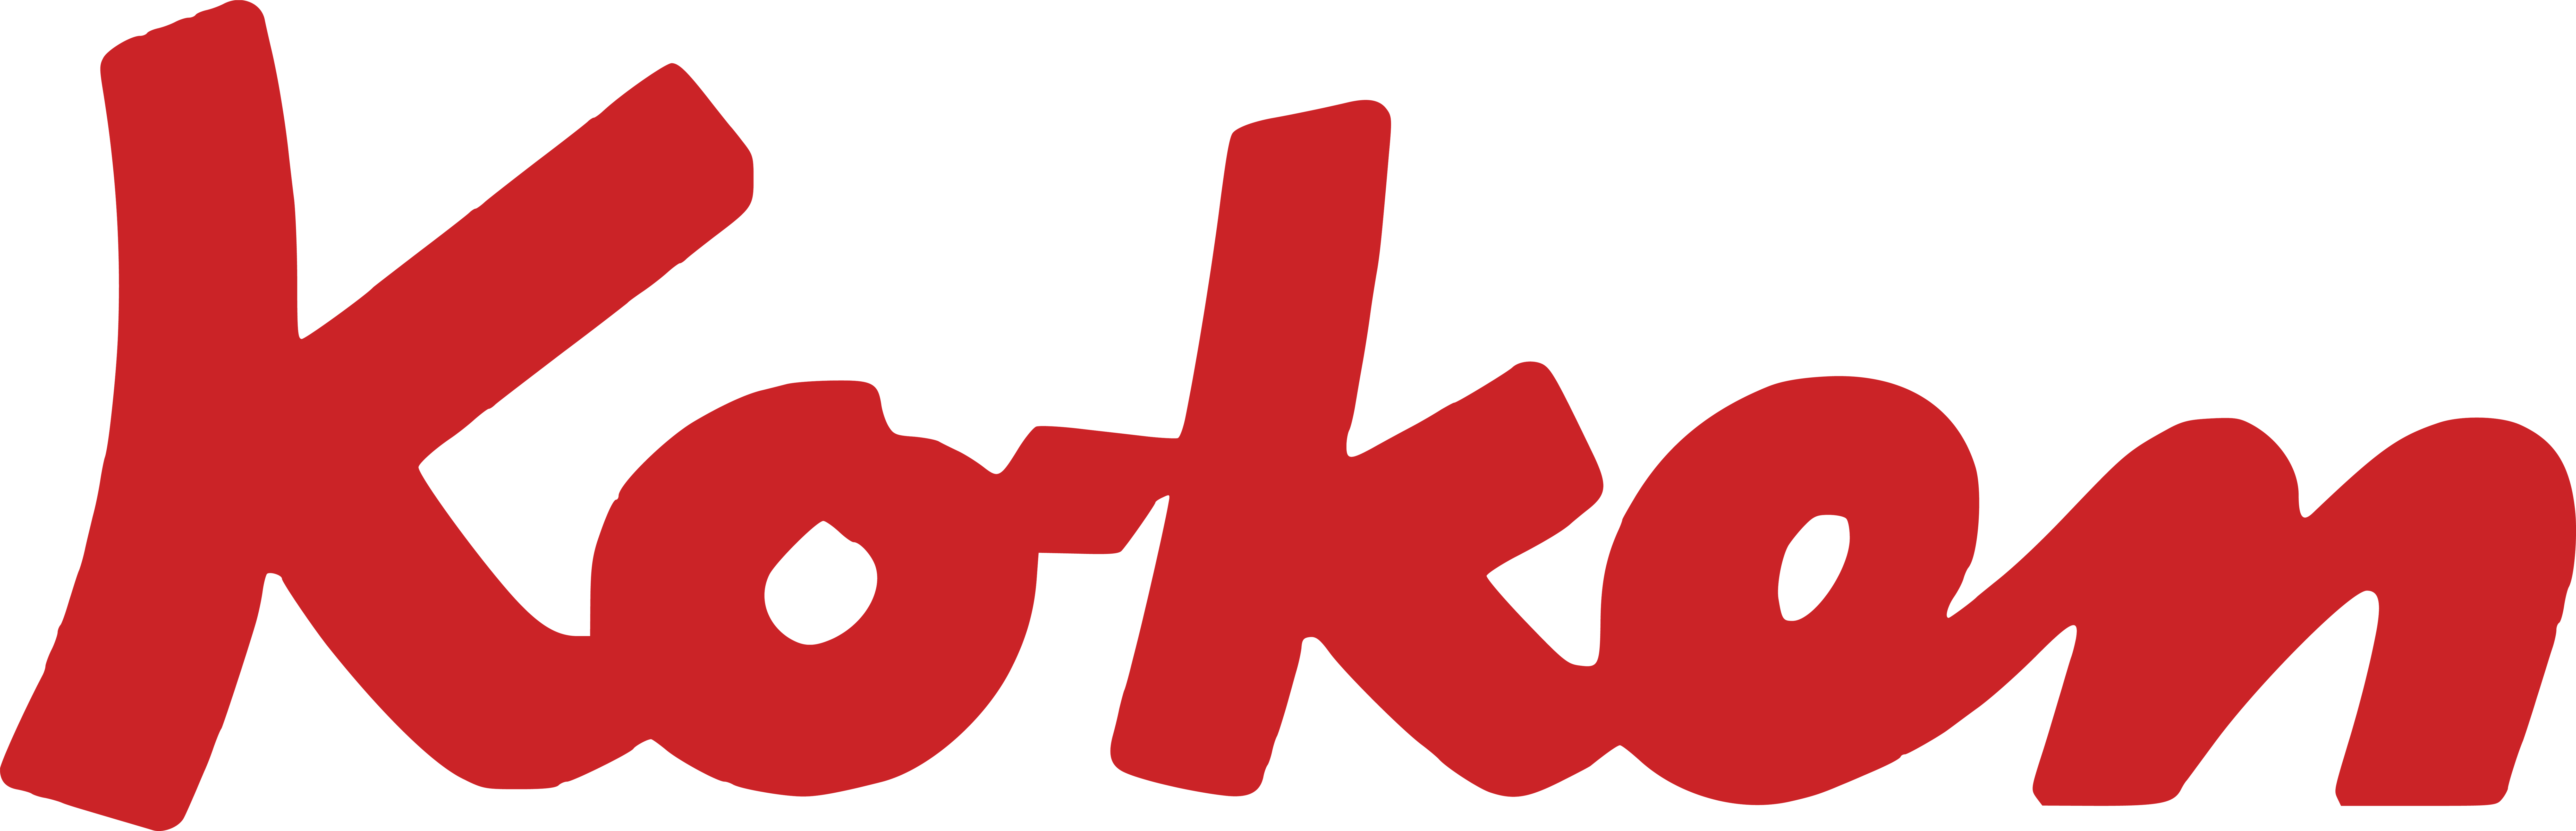 KOKEN logo